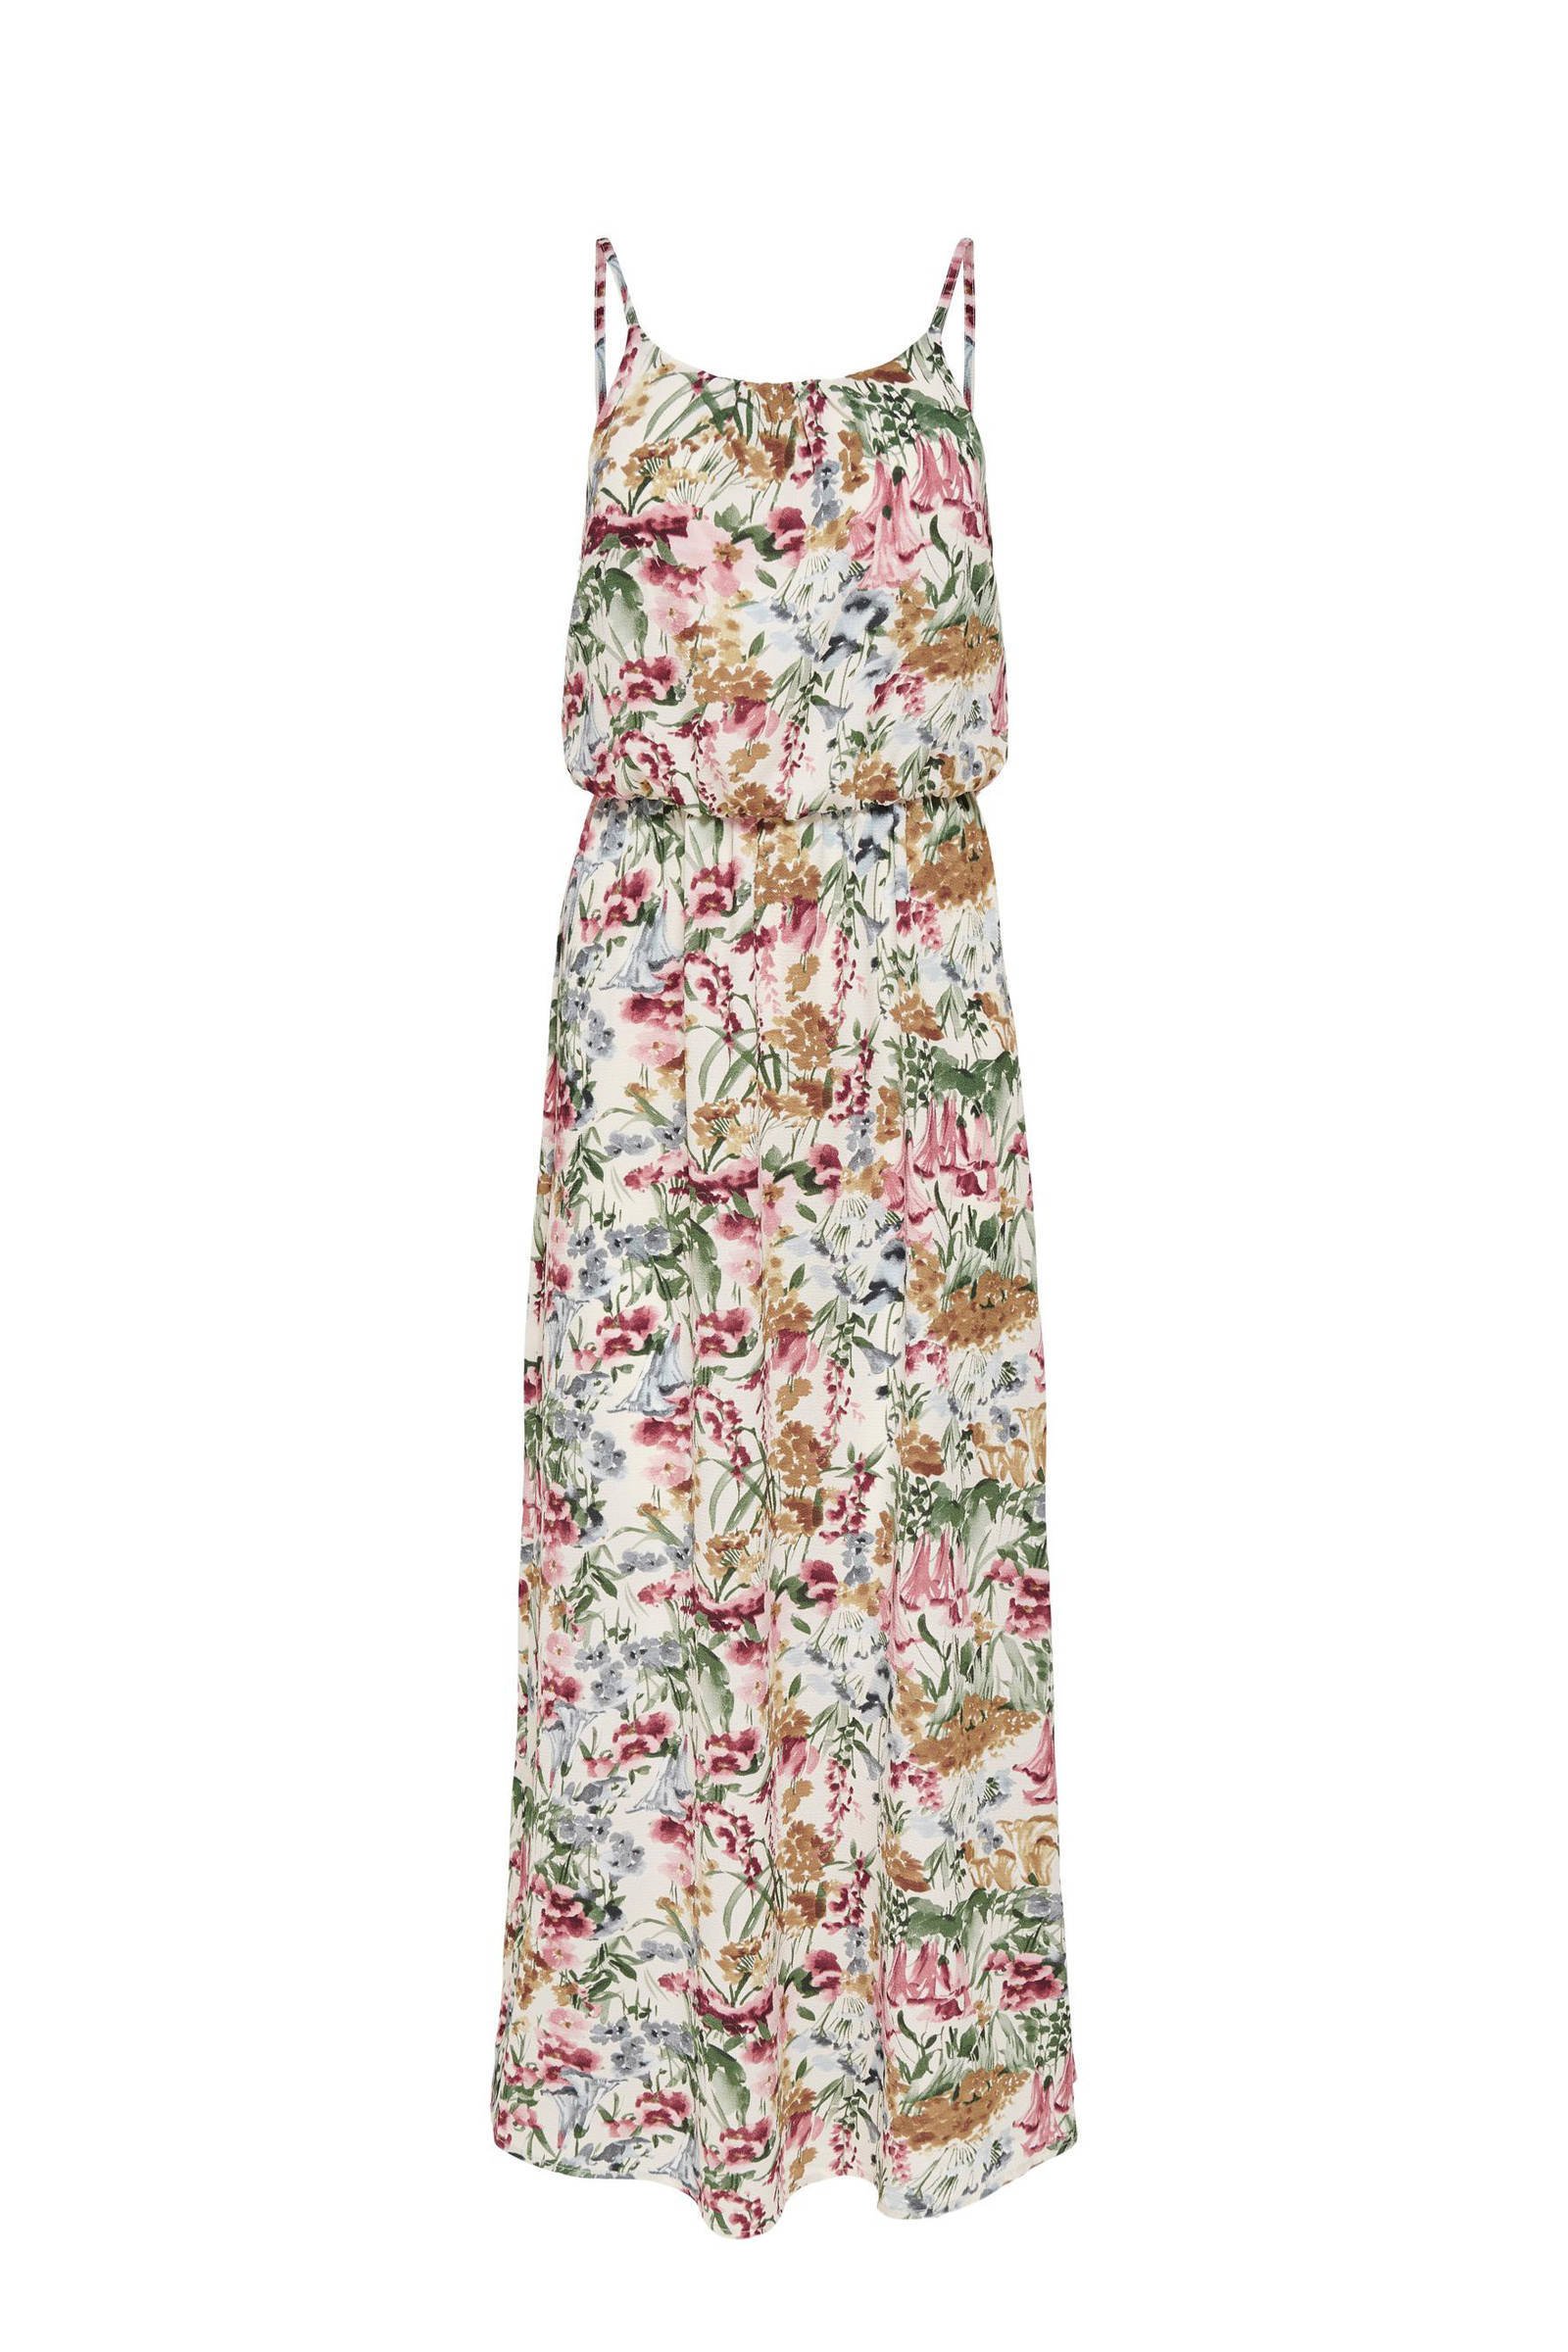 ONLY gebloemde maxi jurk ONLWINNER ecru/roze/groen/bruin/blauw online kopen